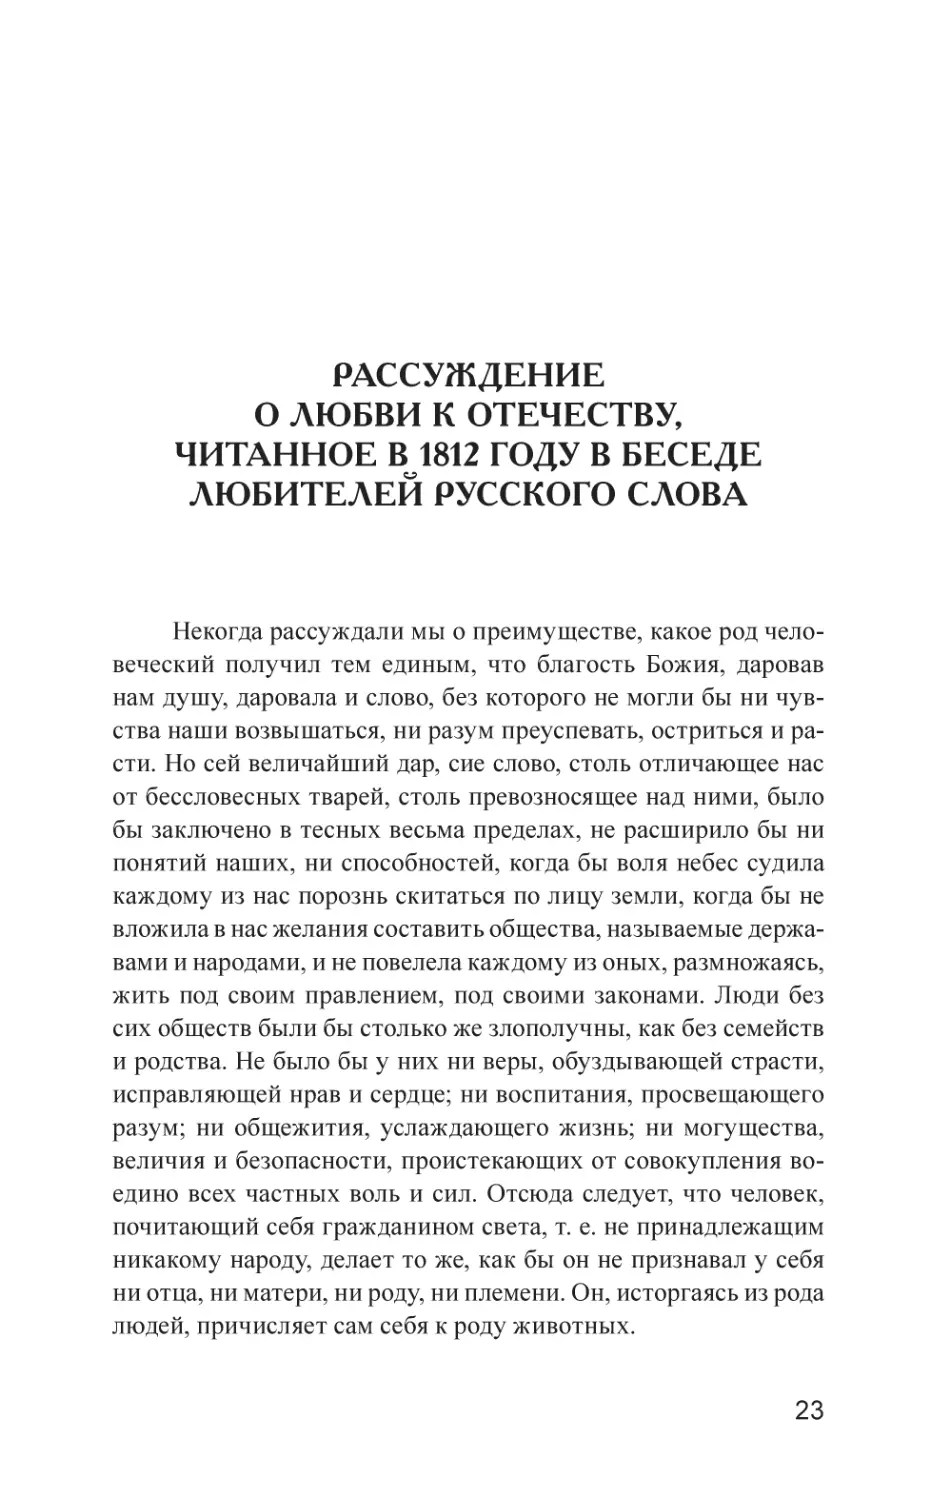 Рассуждение о любви к Отечеству, читанное в 1812 году в беседе любителей русского слова